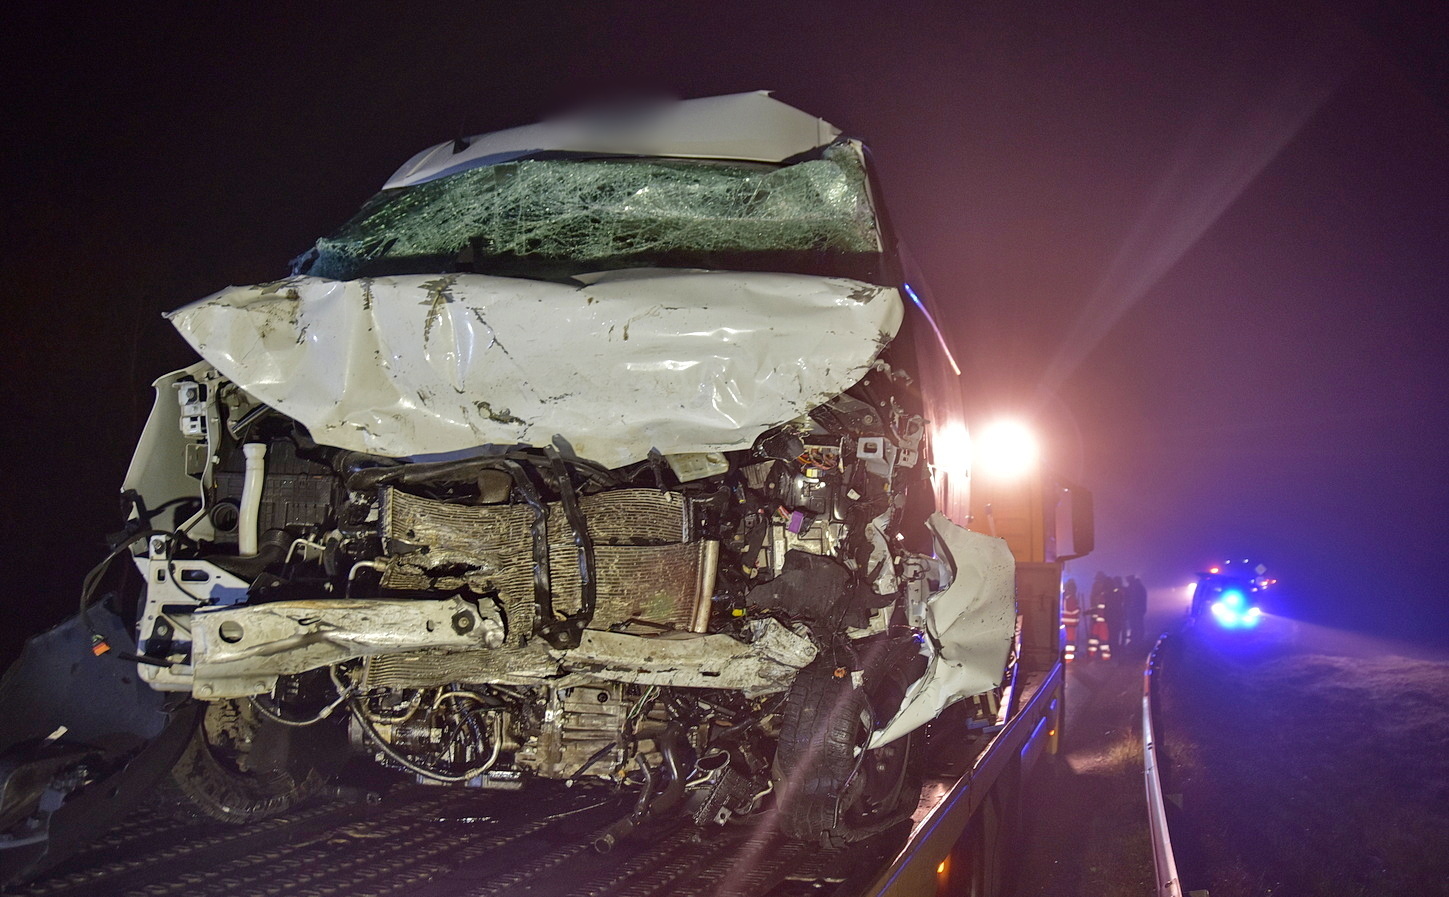 Mindkét sofőr meghalt - Renault furgon sodródott Fiat elé Gyöngyösfalu közelében